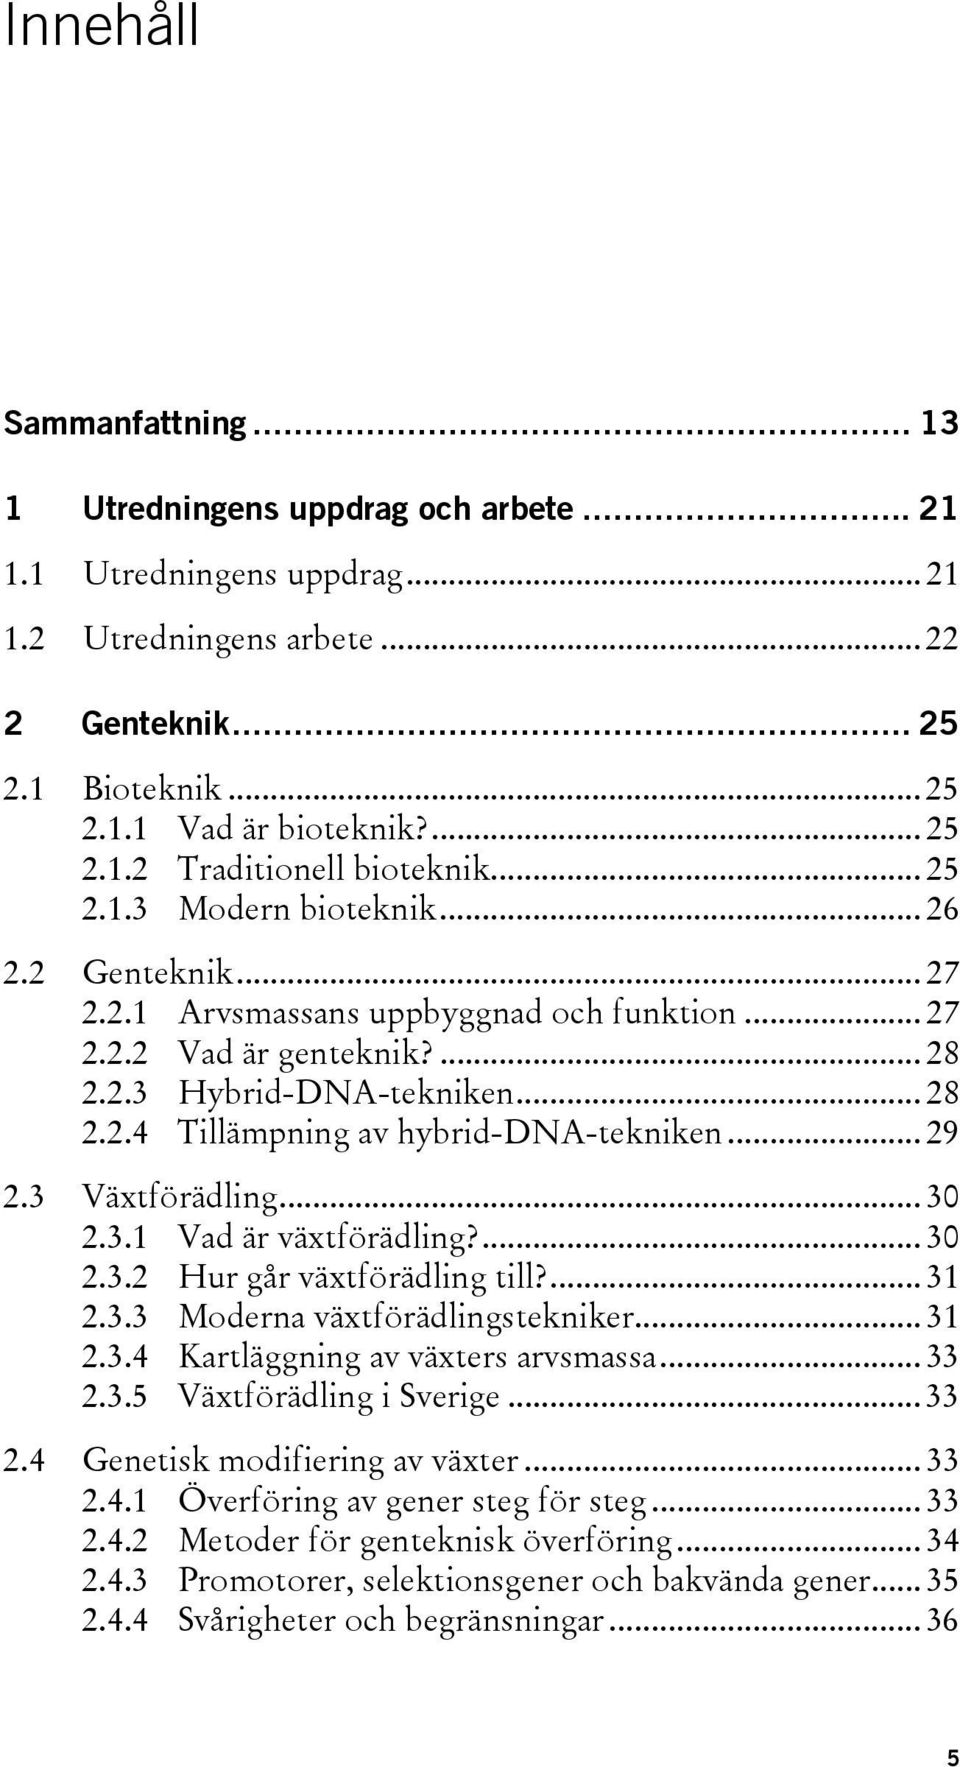 .. 29 2.3 Växtförädling... 30 2.3.1 Vad är växtförädling?... 30 2.3.2 Hur går växtförädling till?... 31 2.3.3 Moderna växtförädlingstekniker... 31 2.3.4 Kartläggning av växters arvsmassa... 33 2.3.5 Växtförädling i Sverige.